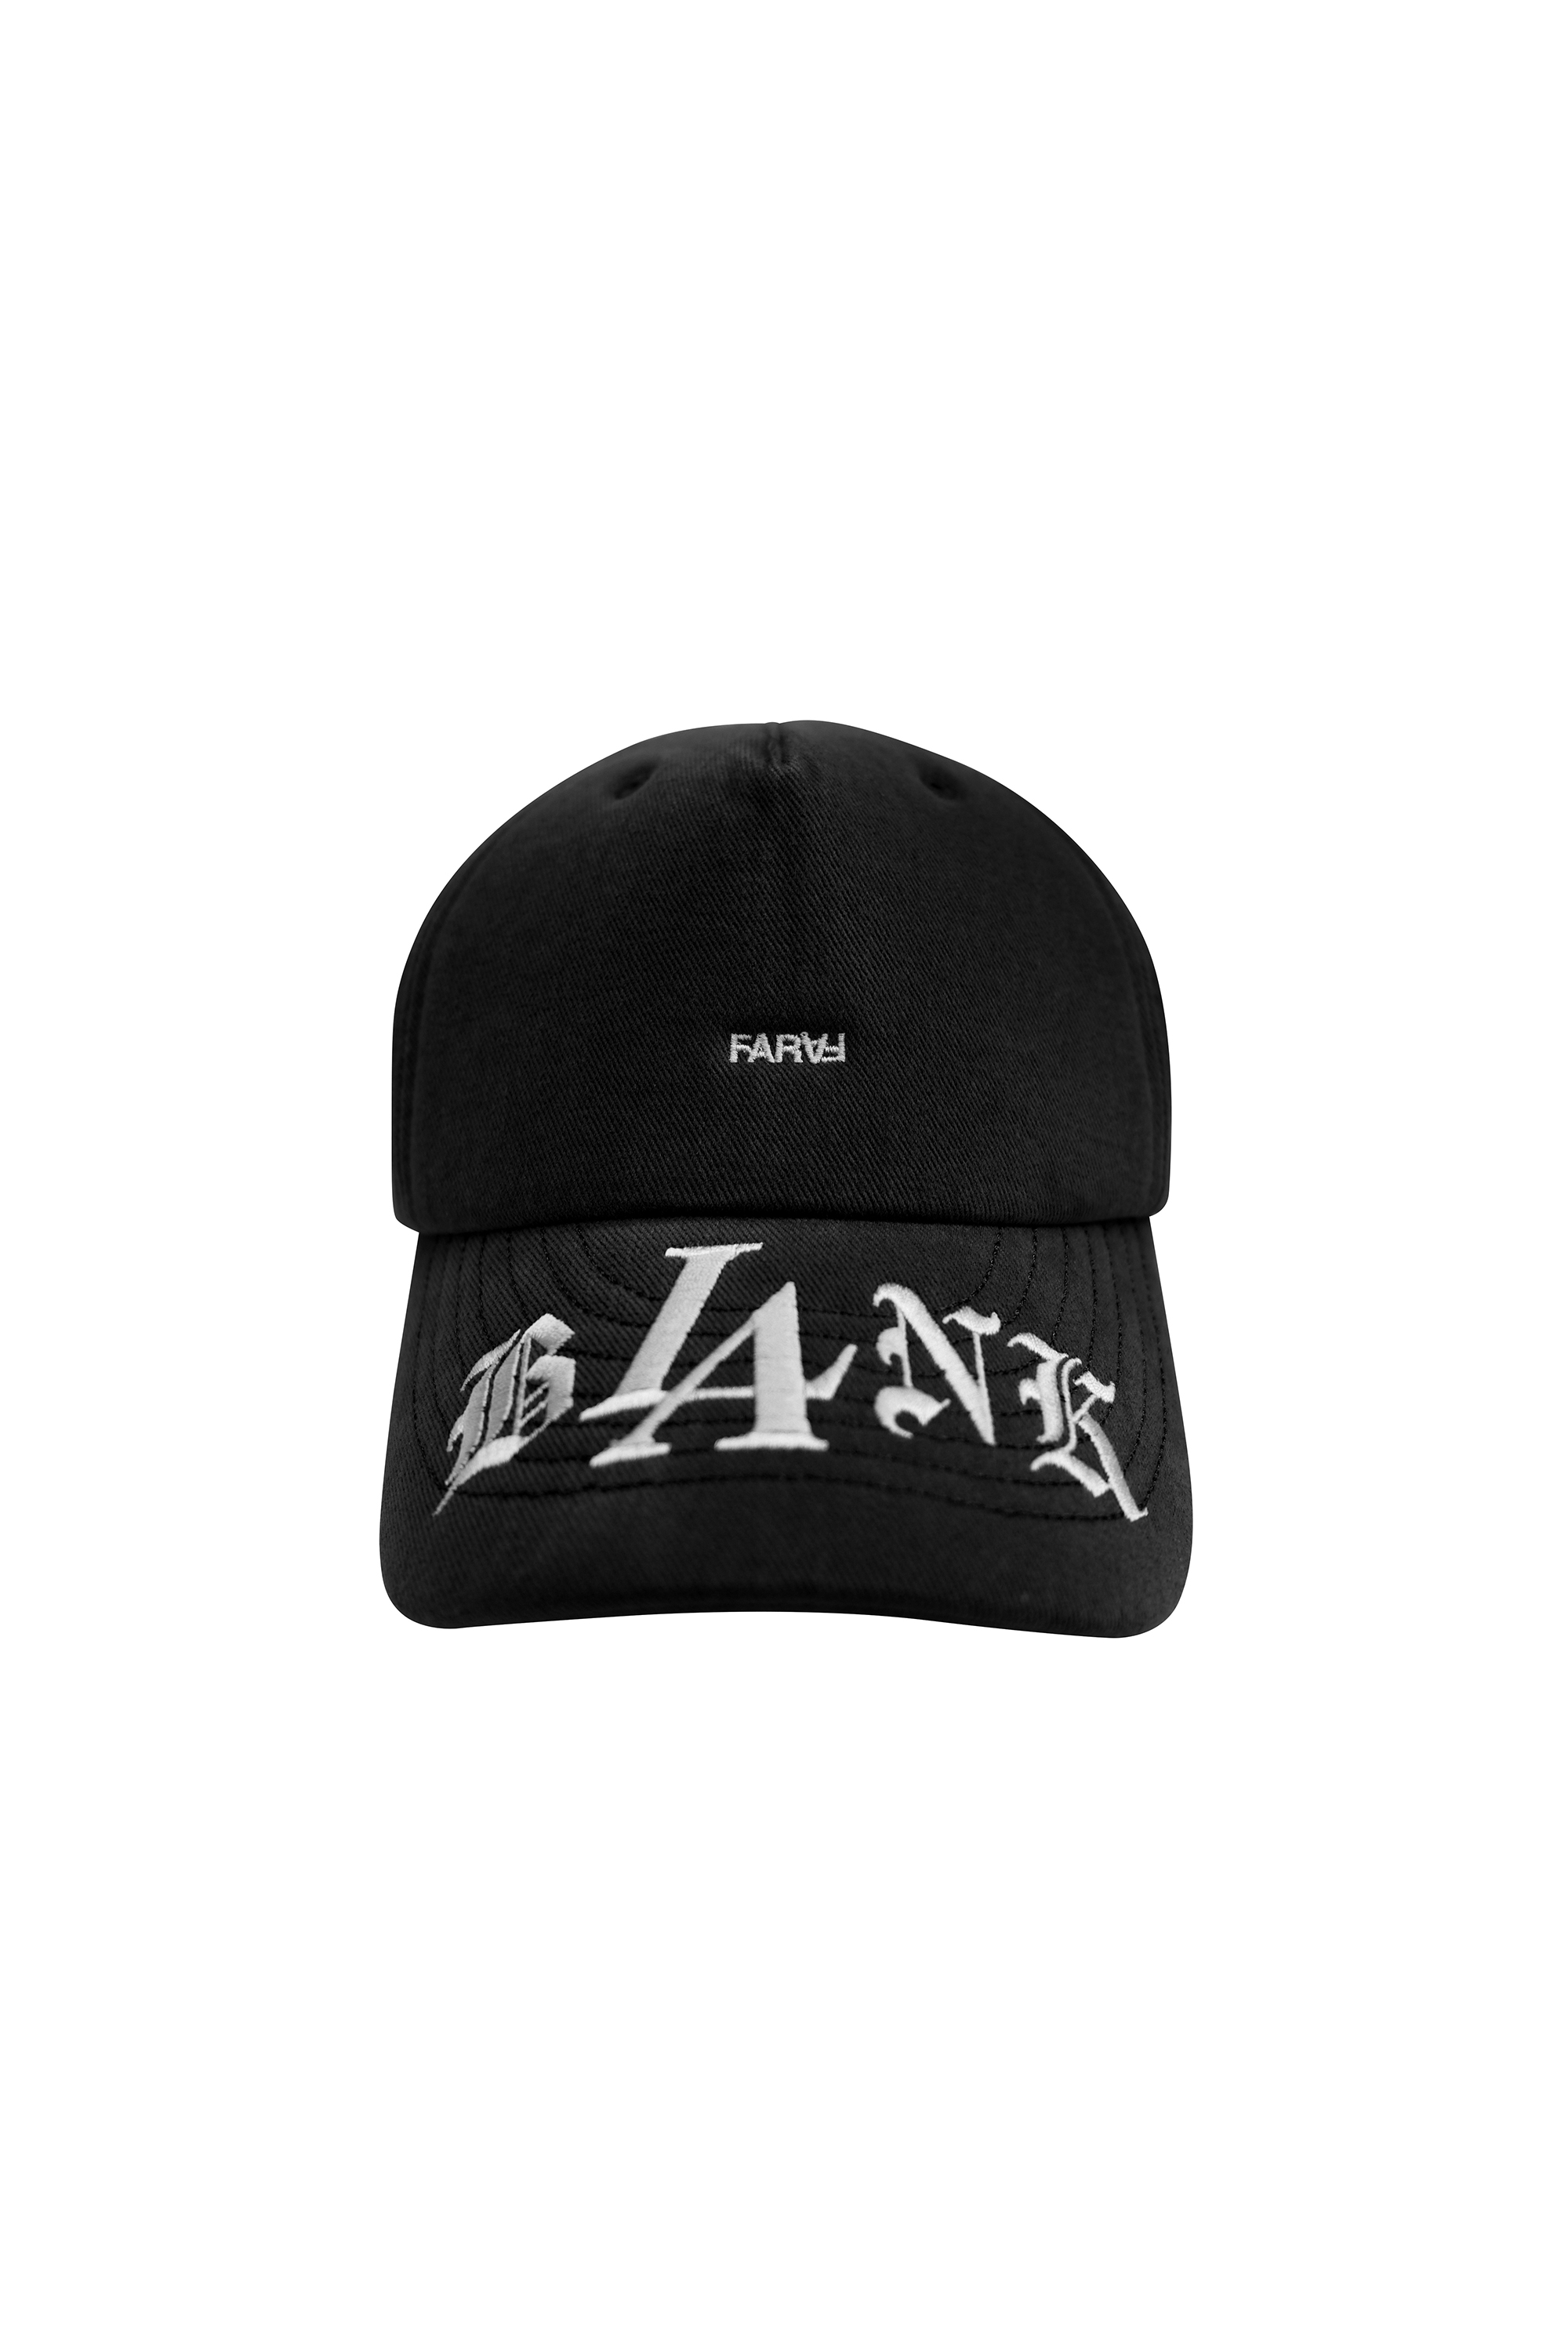 FAR GOTHIC BLANK CAP_BLACK